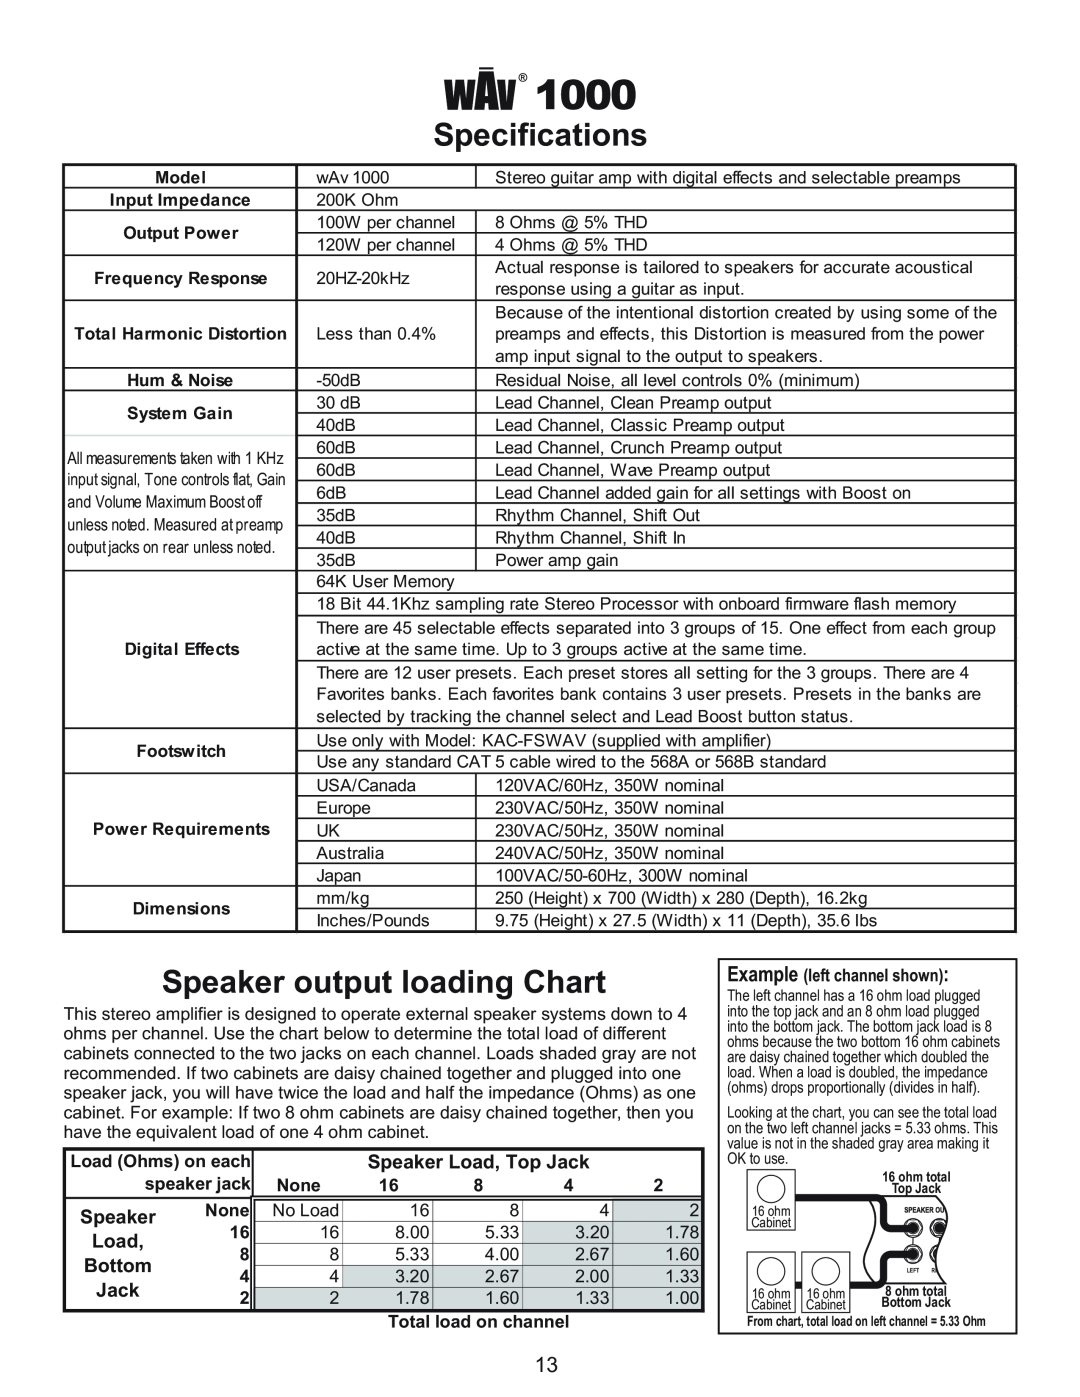 Kustom Wav 1000 owner manual Specifications, Speaker output loading Chart, Speaker Load, Top Jack, Bottom 